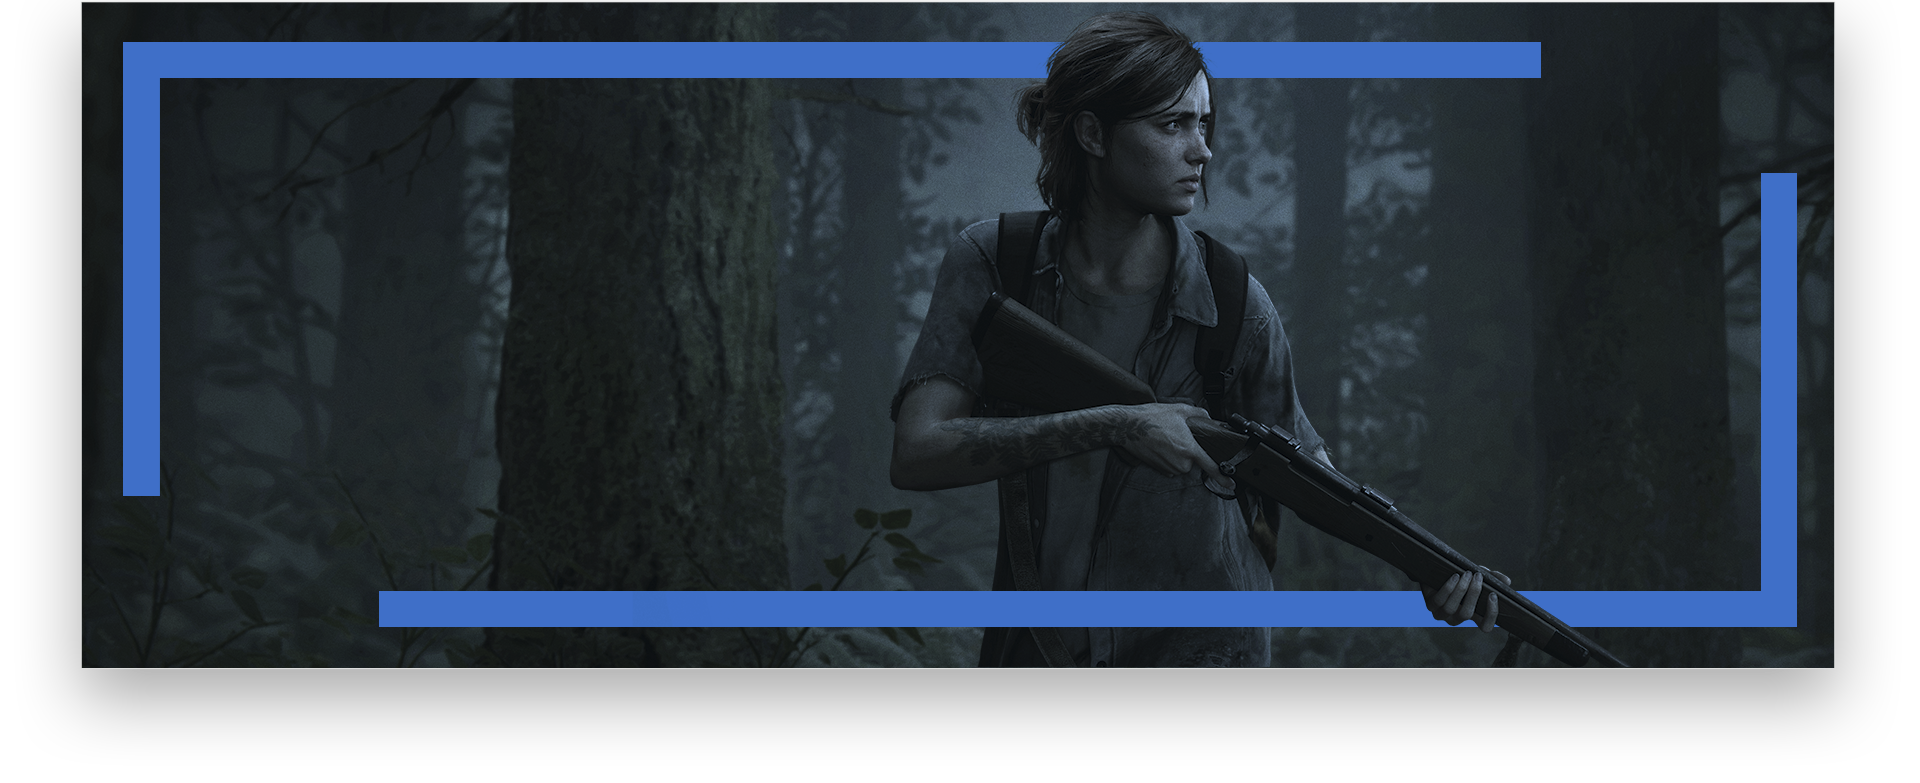 الصورة الفنية الأساسية للعبة The Last of Us Part 2